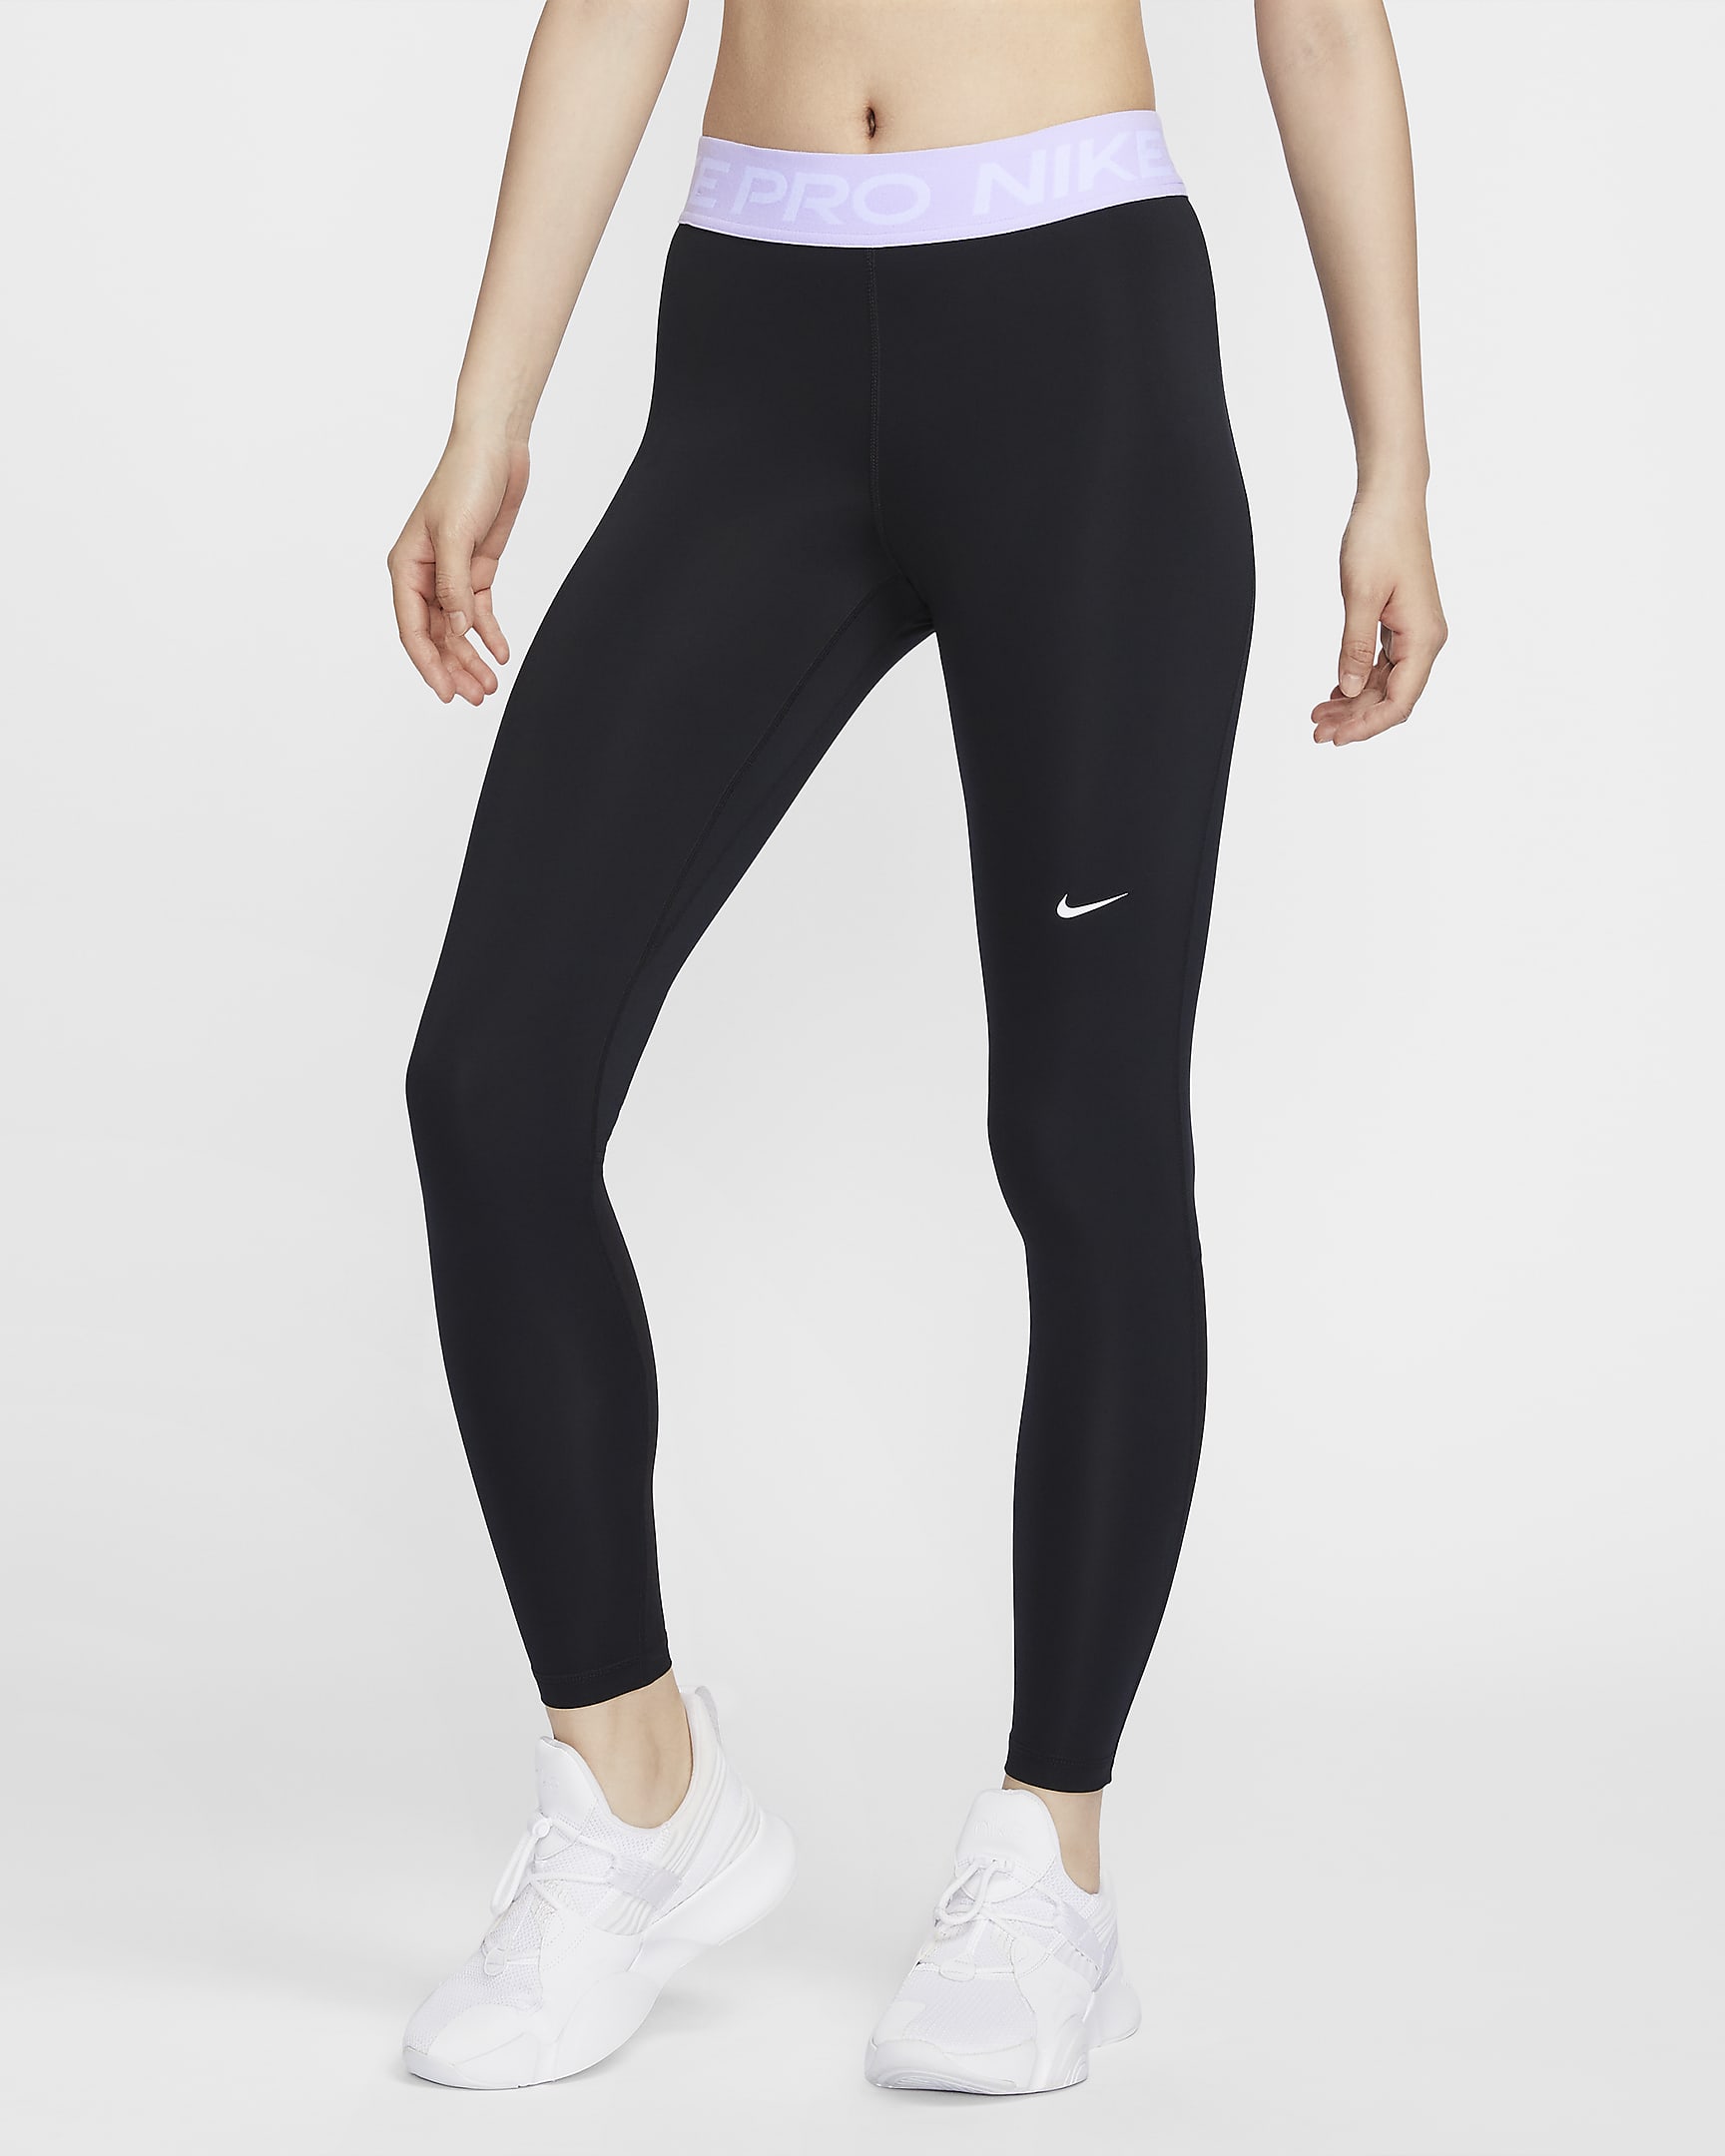 Nike Pro Women's Mid-Rise Leggings - Black/Lilac Bloom/White